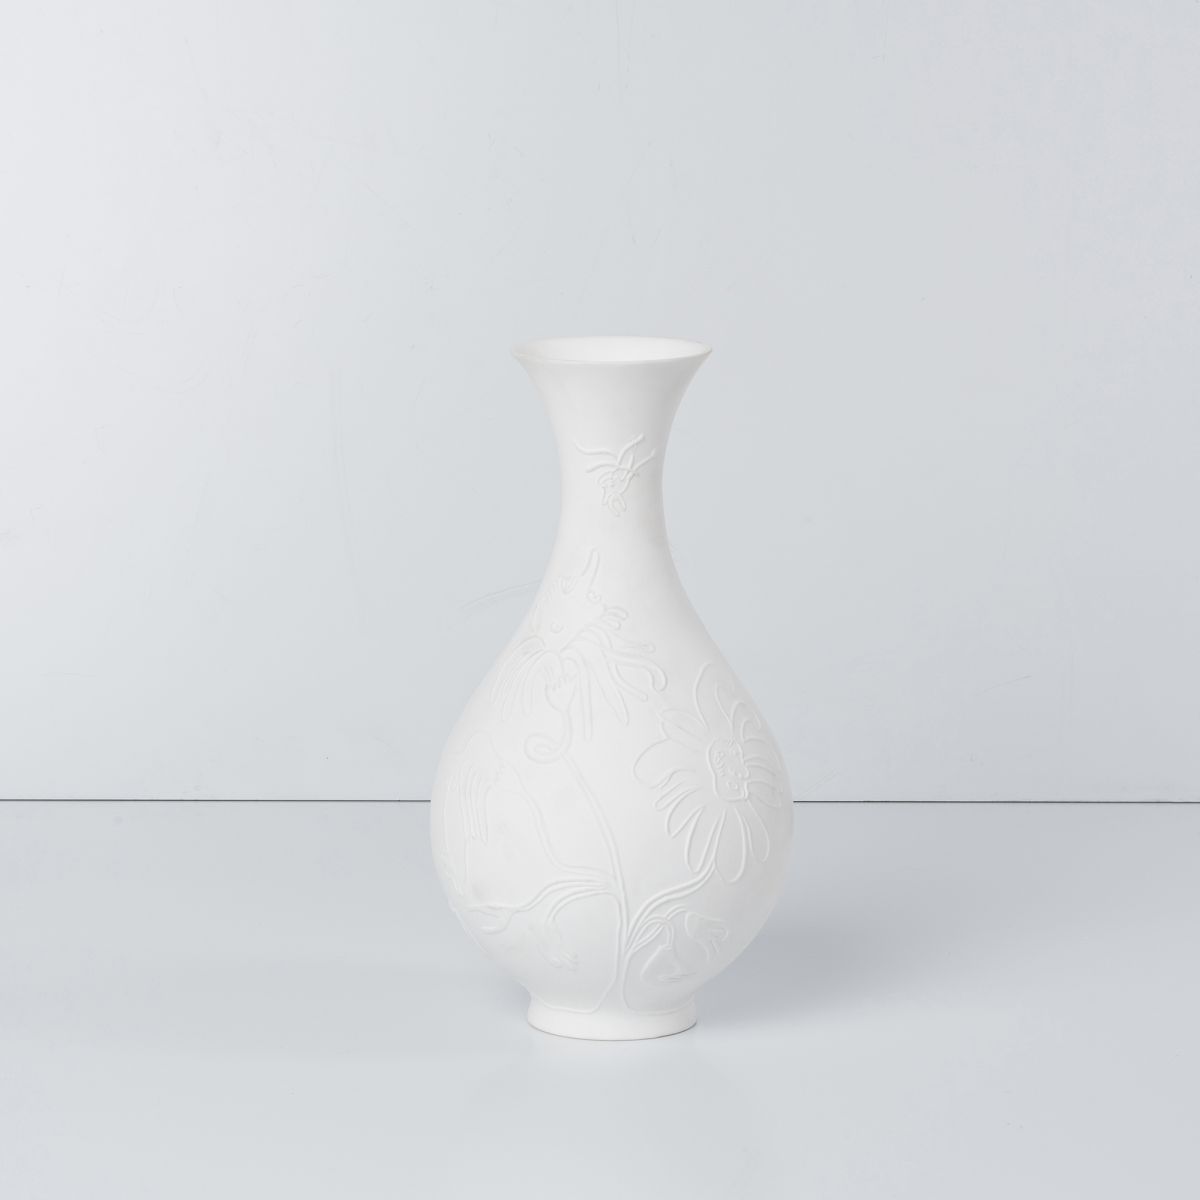 Vase Doodletron  Nicholas Hughes pic-1